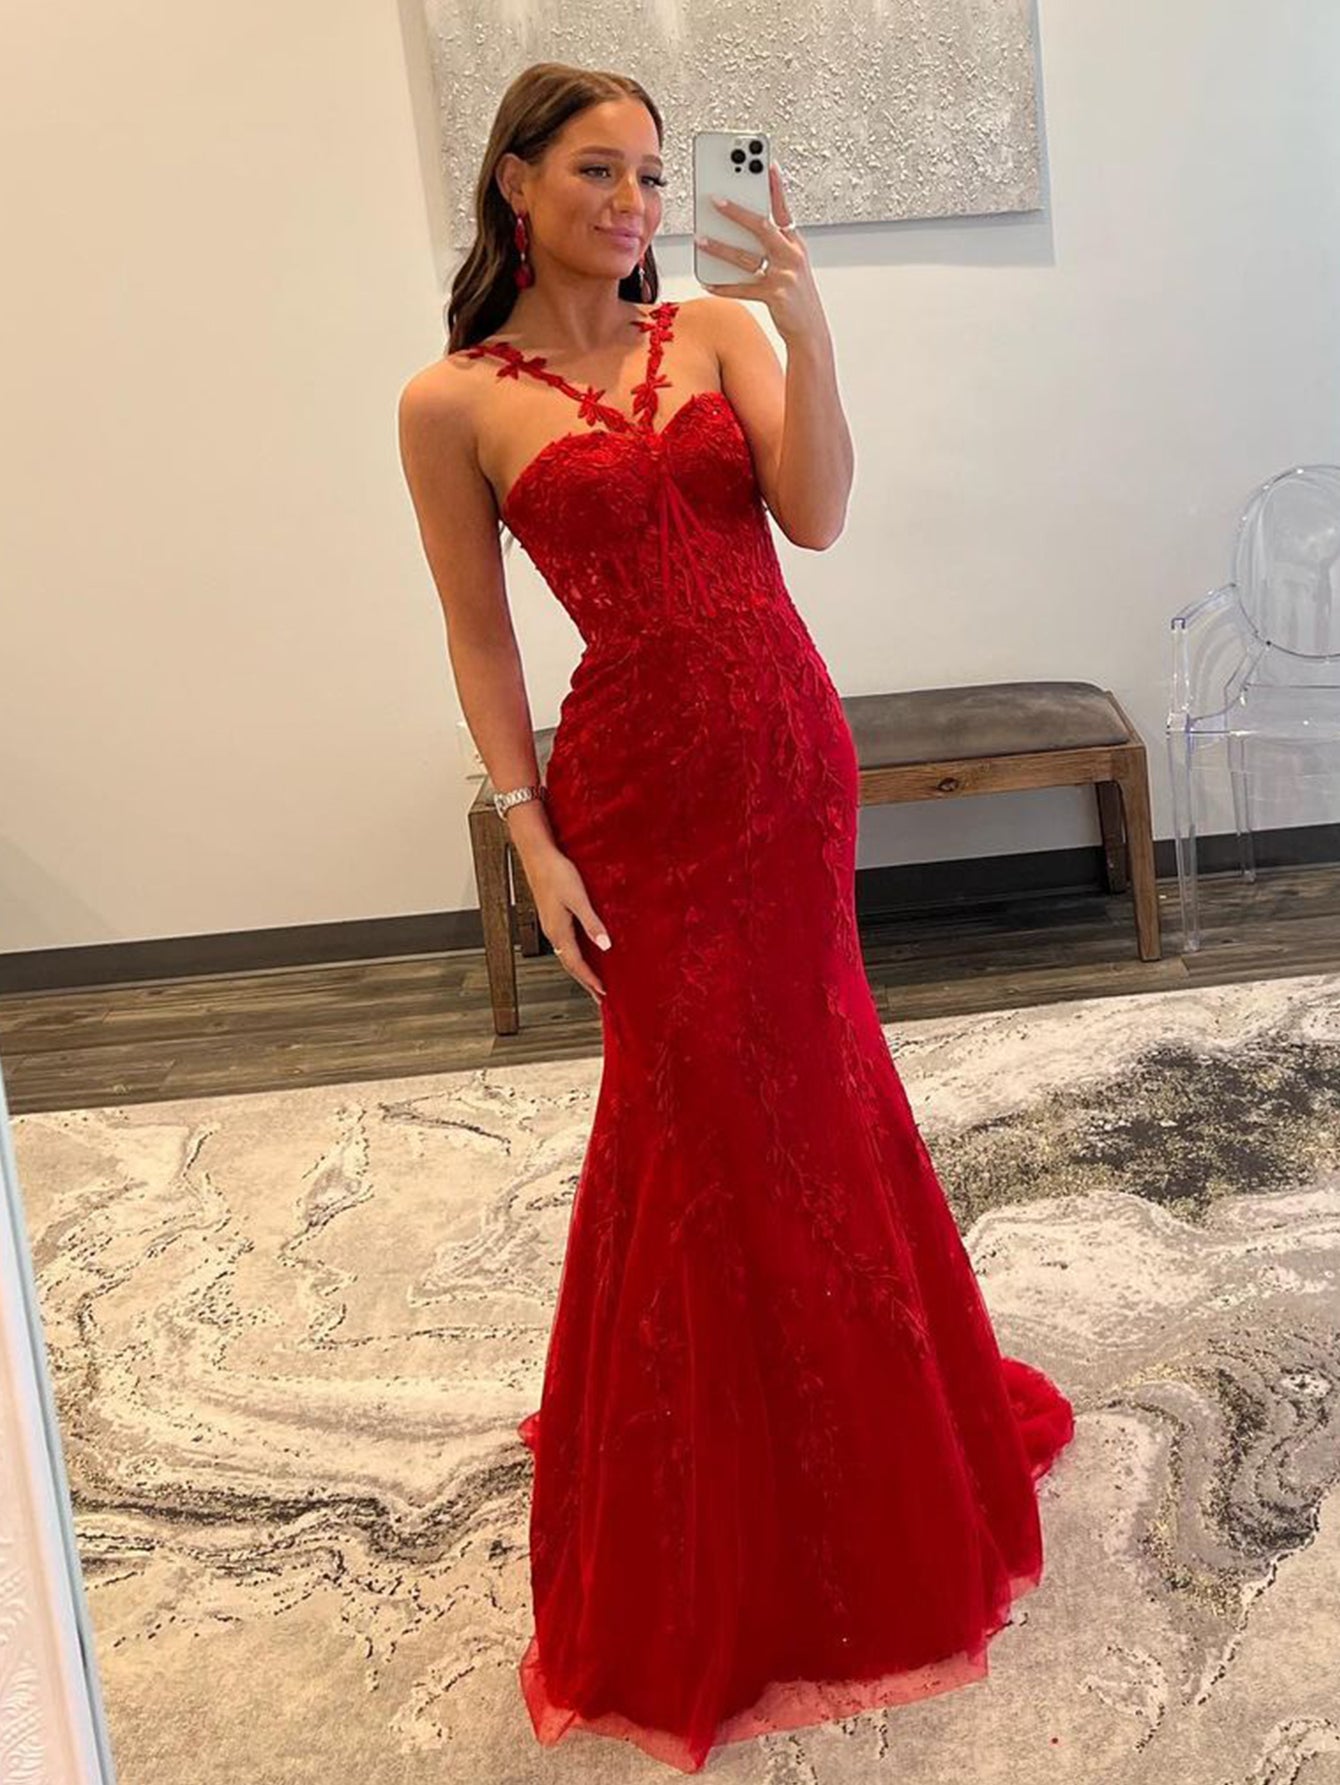 red mermaid dress